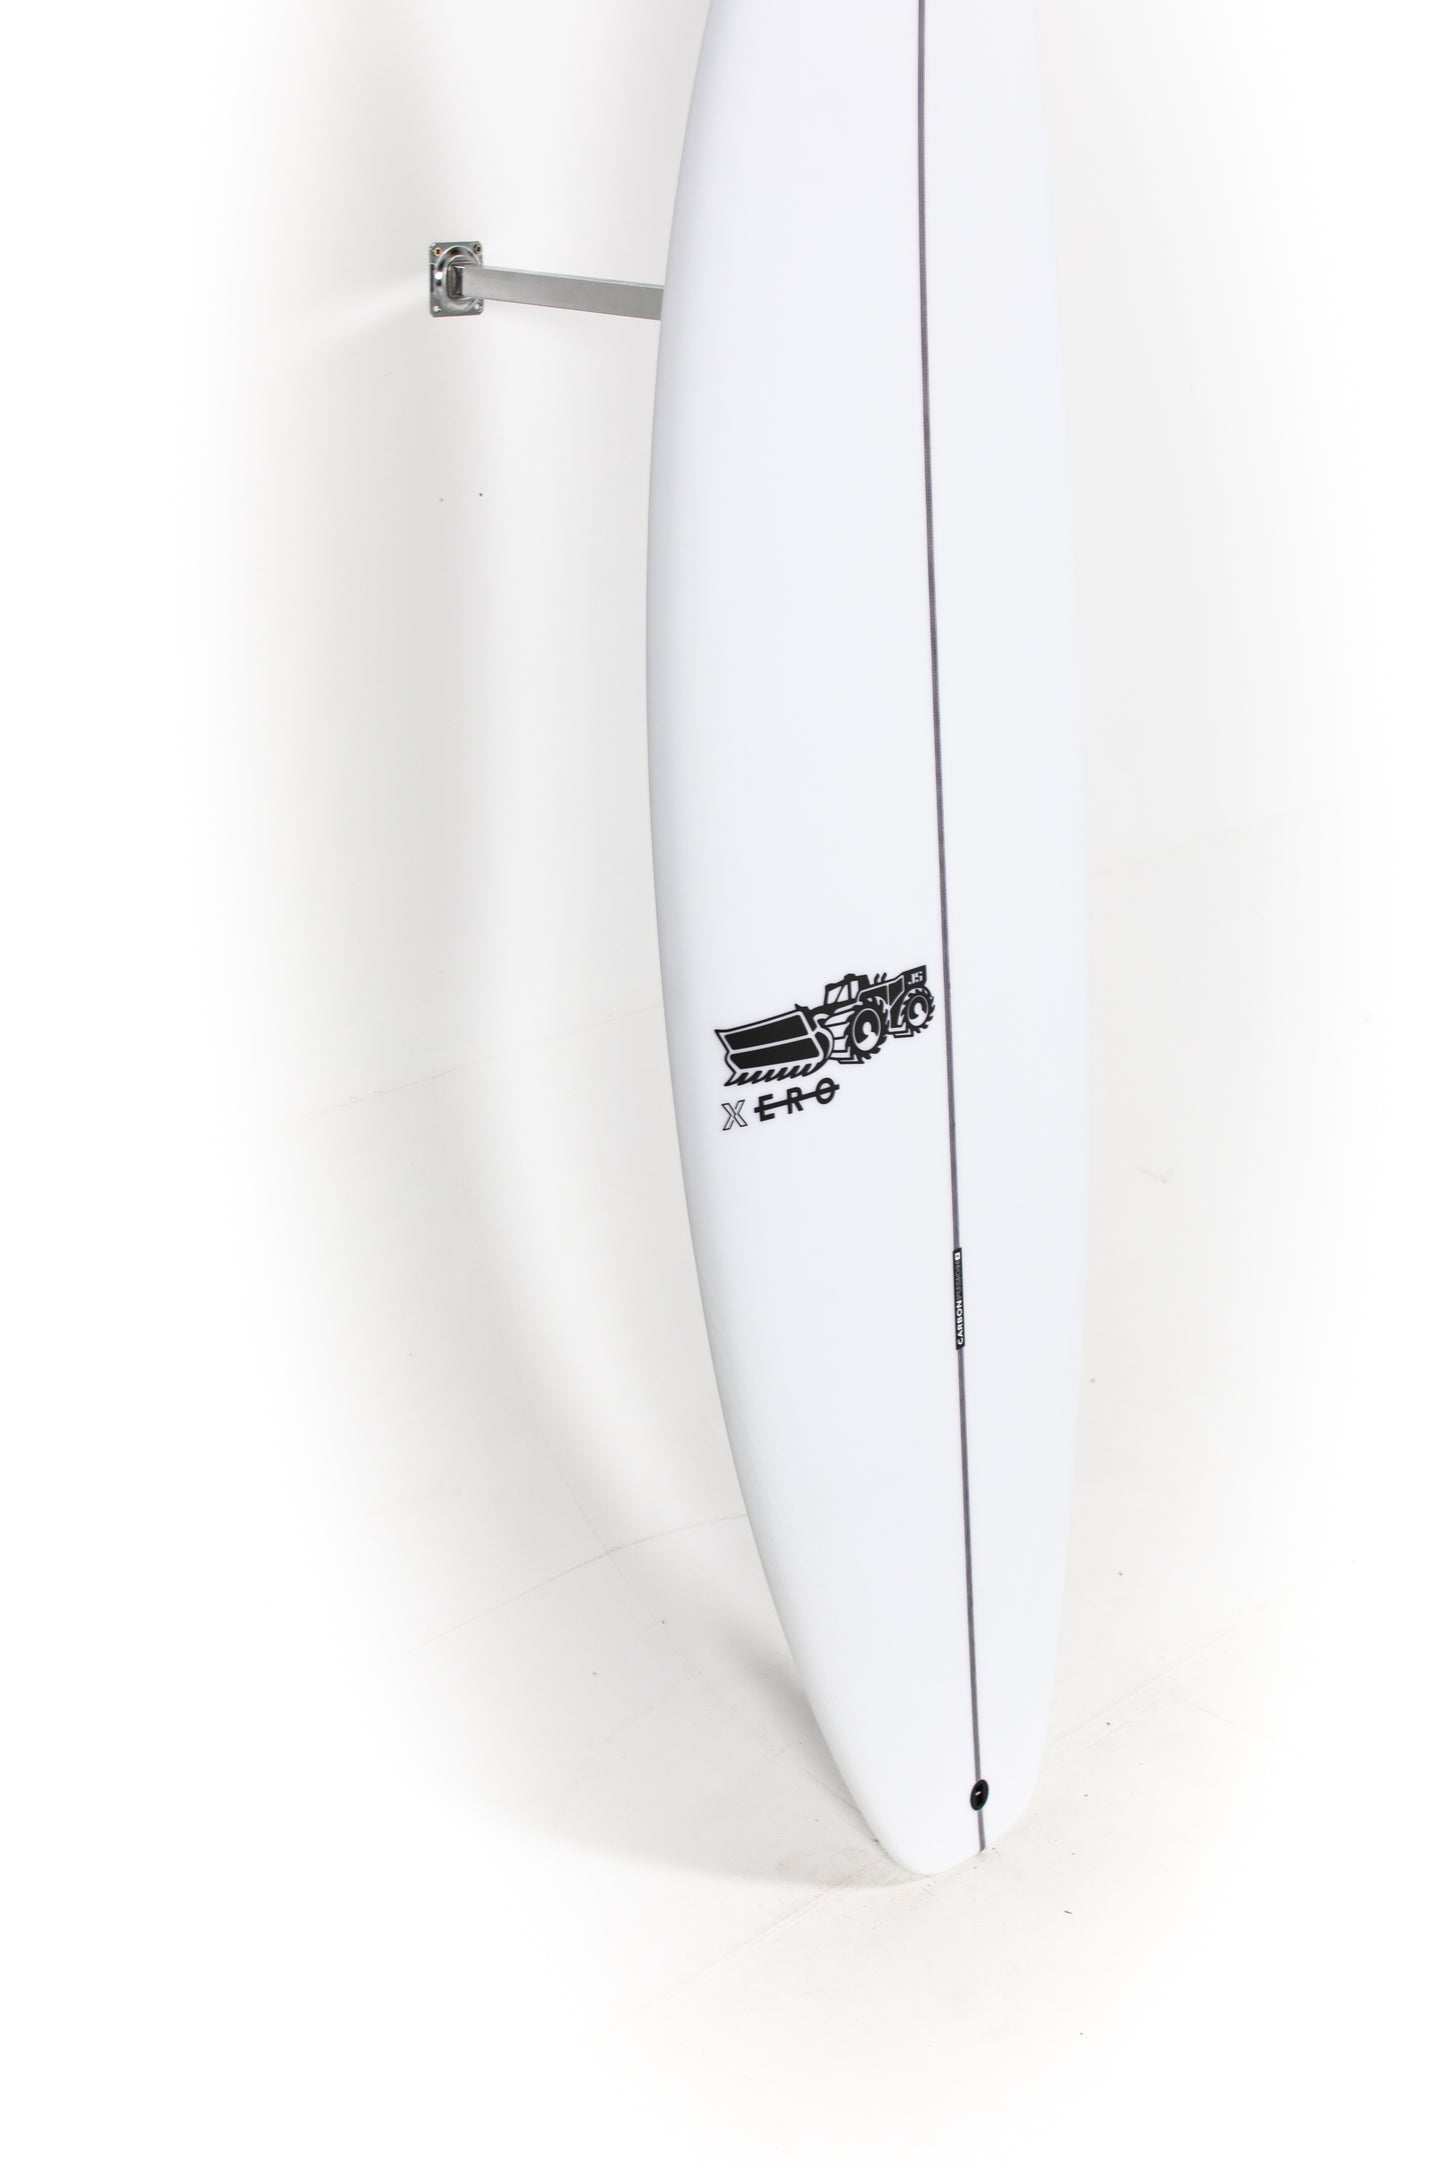 JS Surfboards - XERO - 6'0